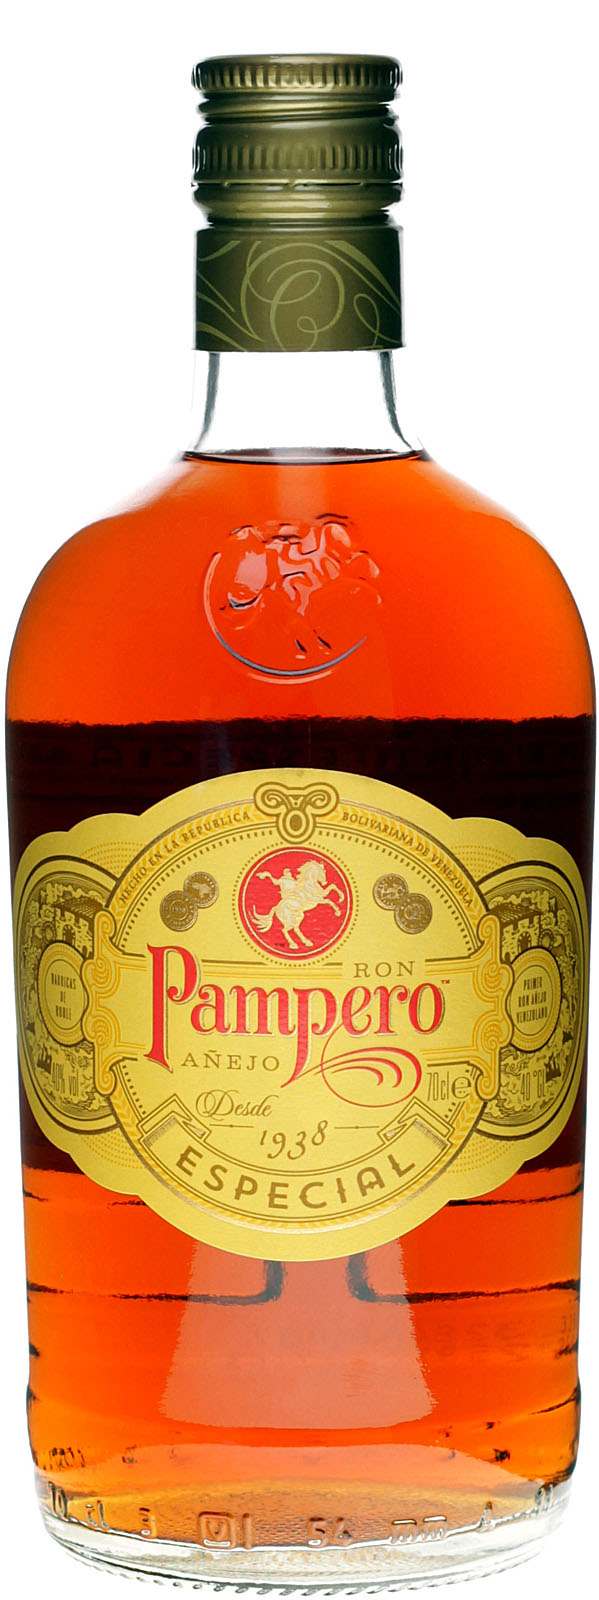 Pampero Anejo Especial Rum aus Venezuela - Einer der be